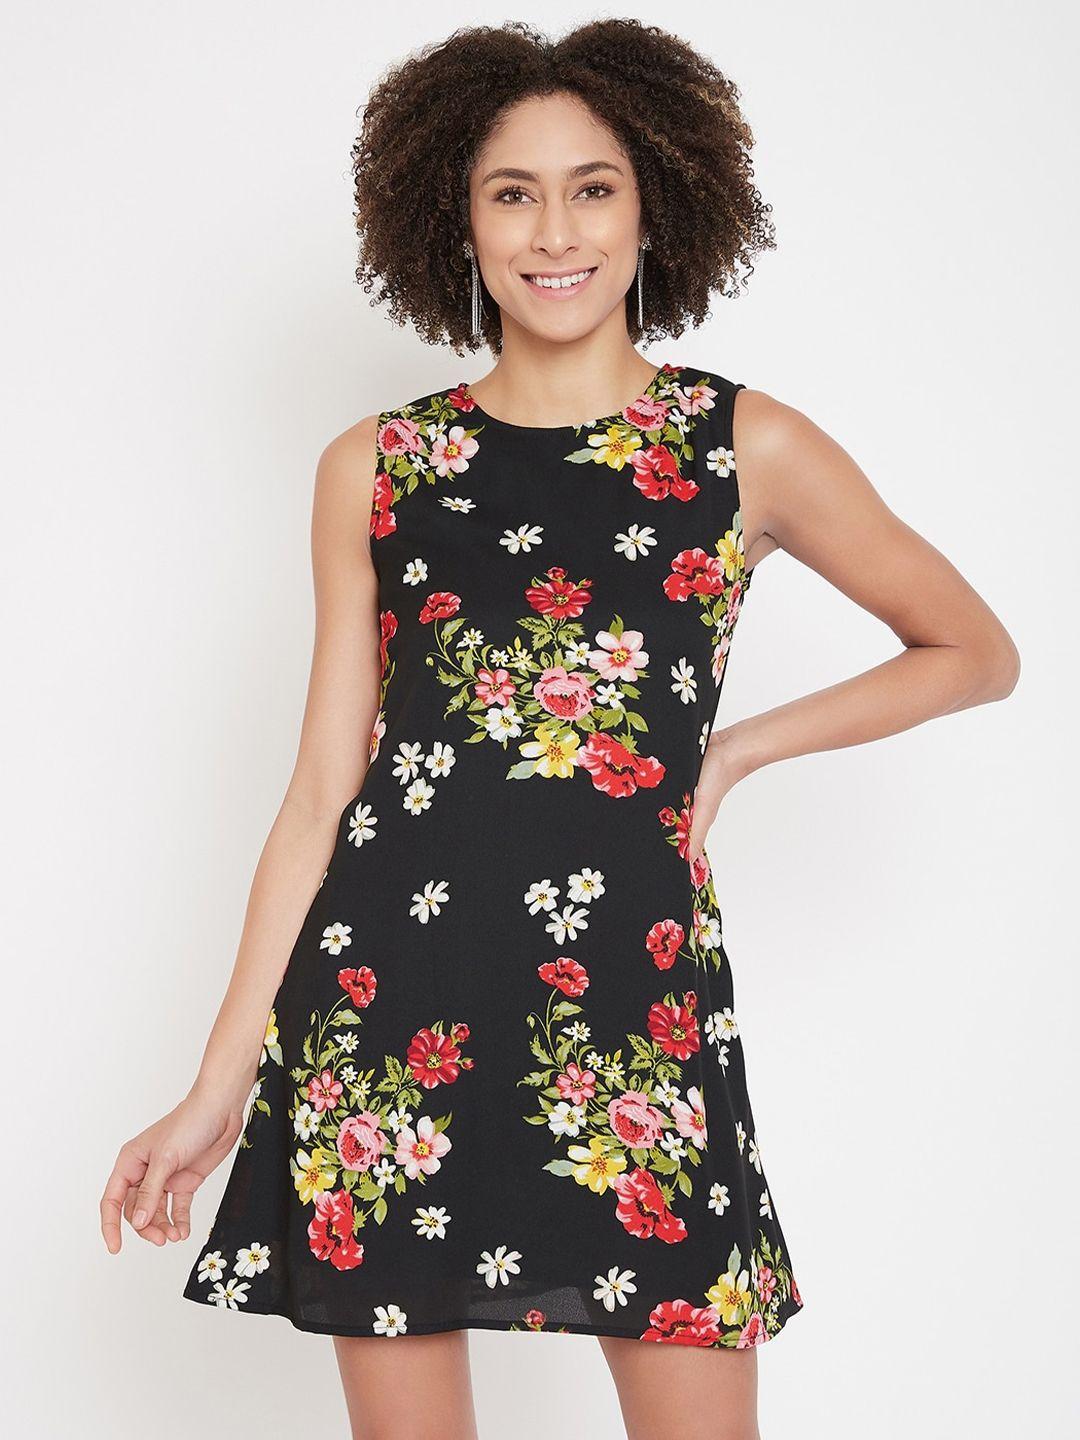 la zoire black floral printed georgette a-line dress